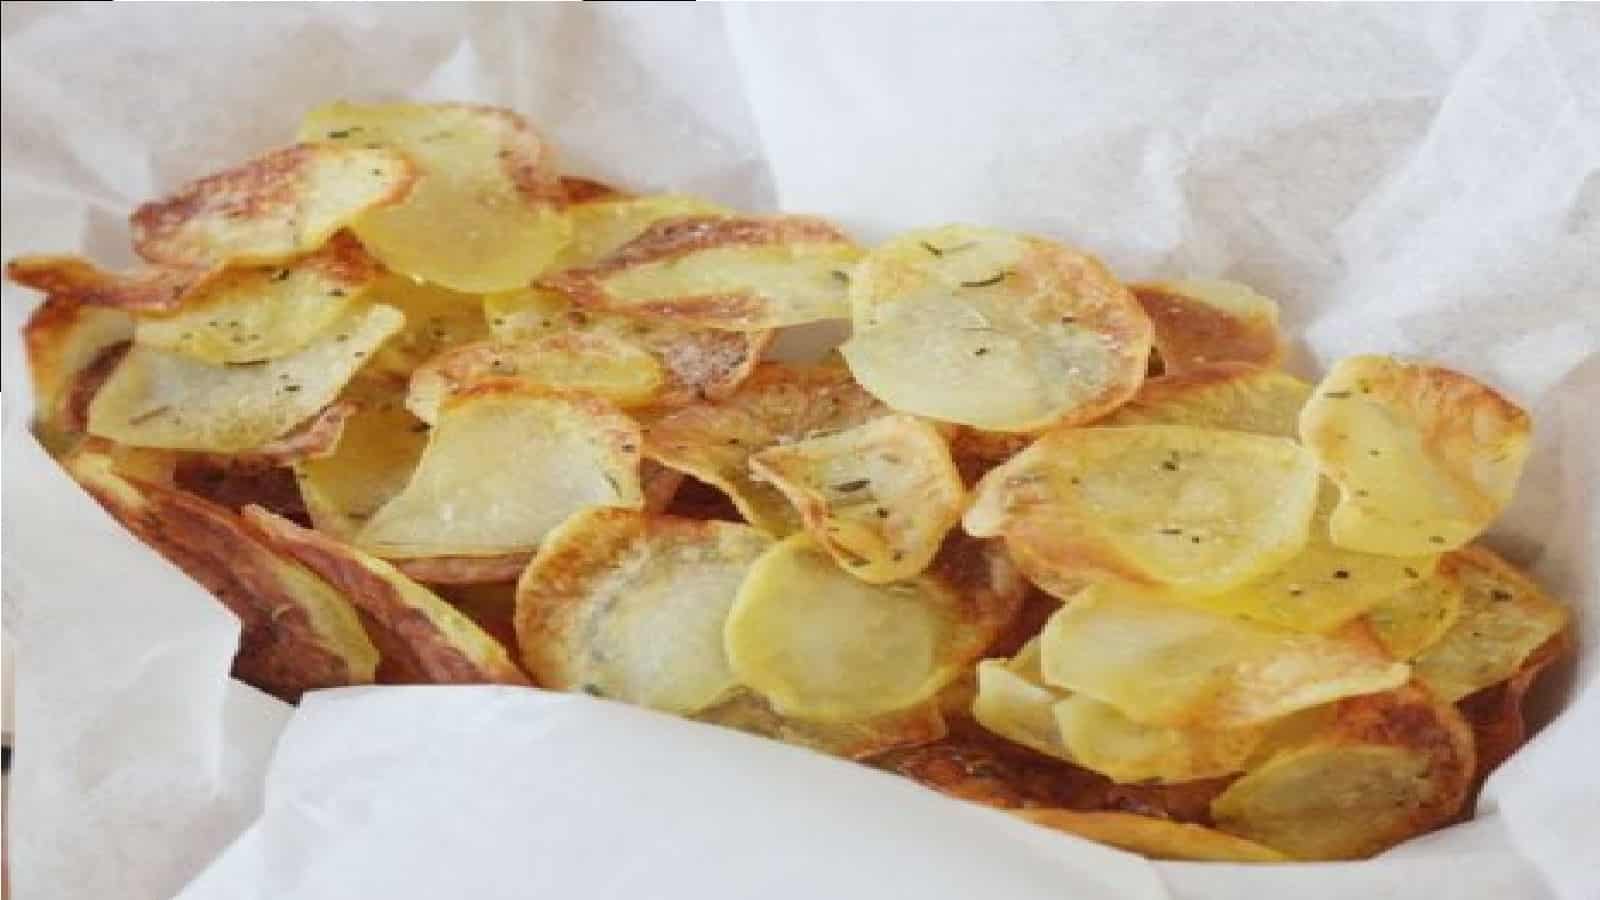 Chips de pommes de terre maison